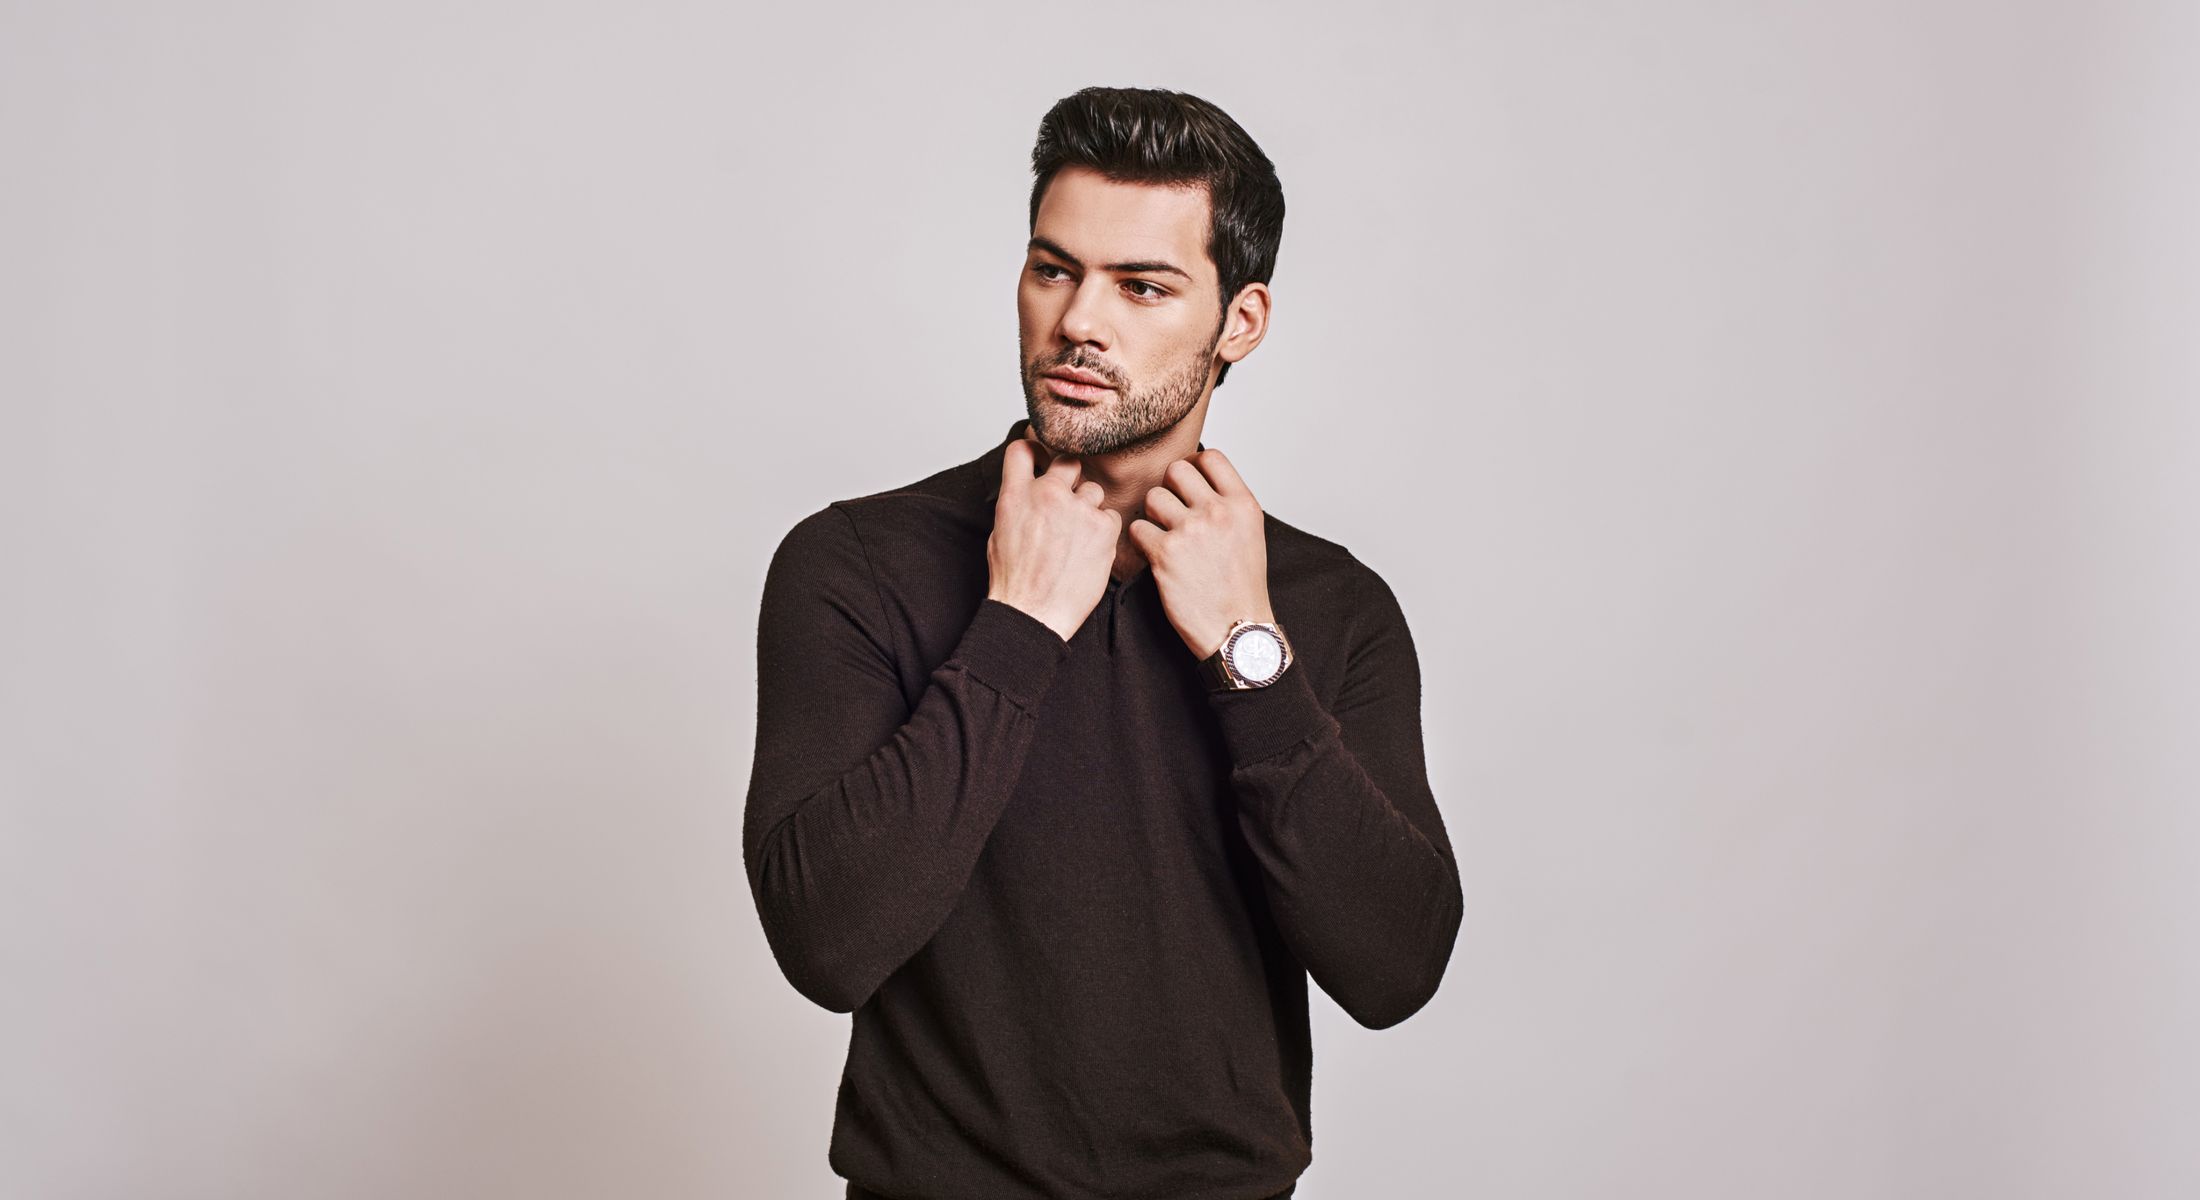 Men's Health Treatments model in black sweater